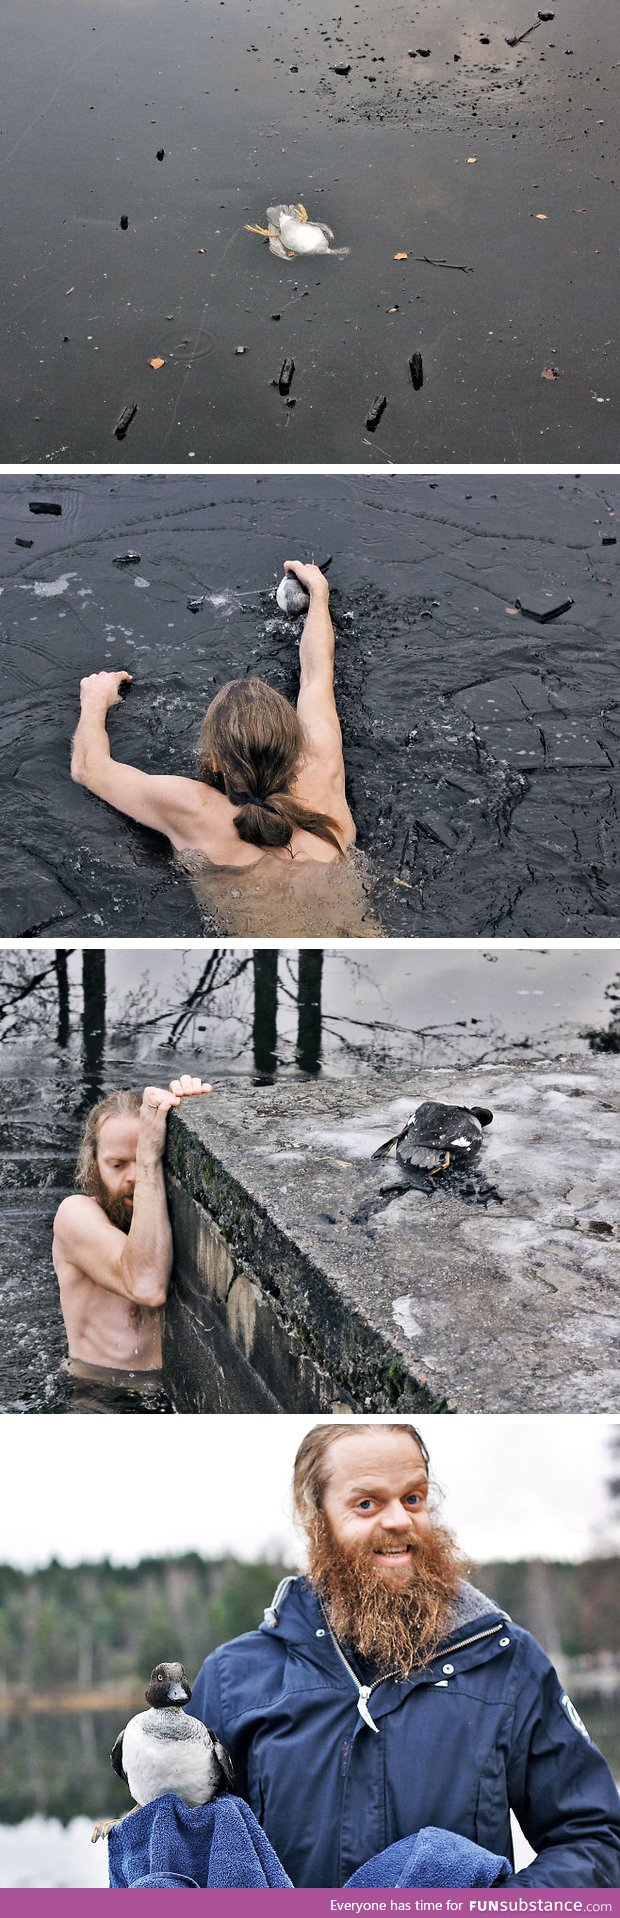 Norwegian man saving a duck